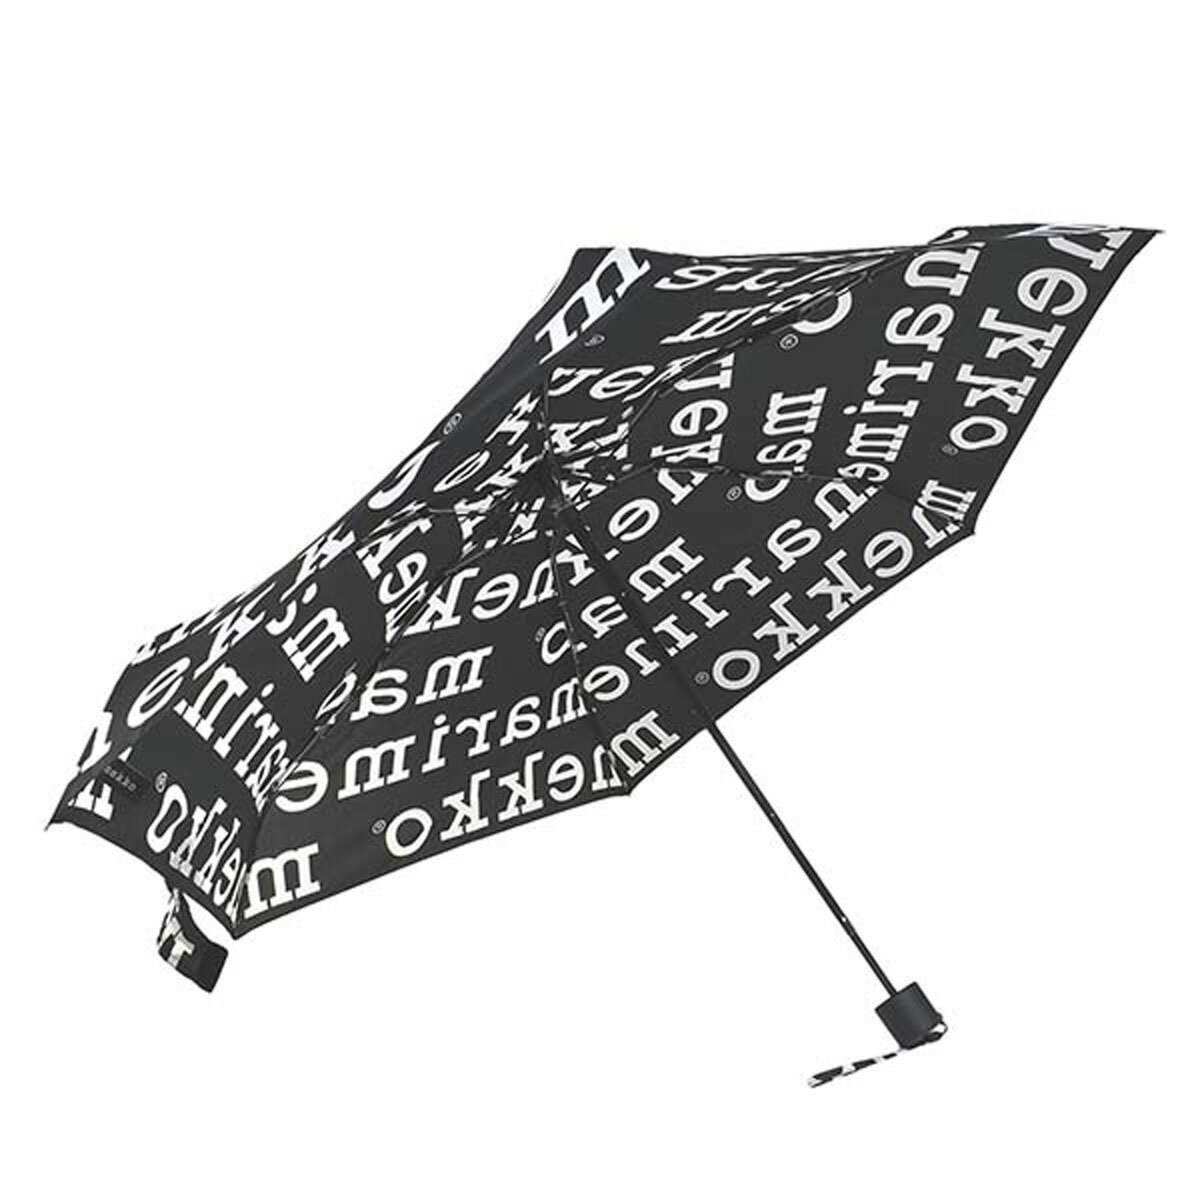 マリメッコ marimekko 折りたたみ傘 傘 雨傘 折り畳み 048859 910 MINI MANUAL UMBRELLA ミニ マニュアル アンブレラ MARILOGO ブラック+ホワイト